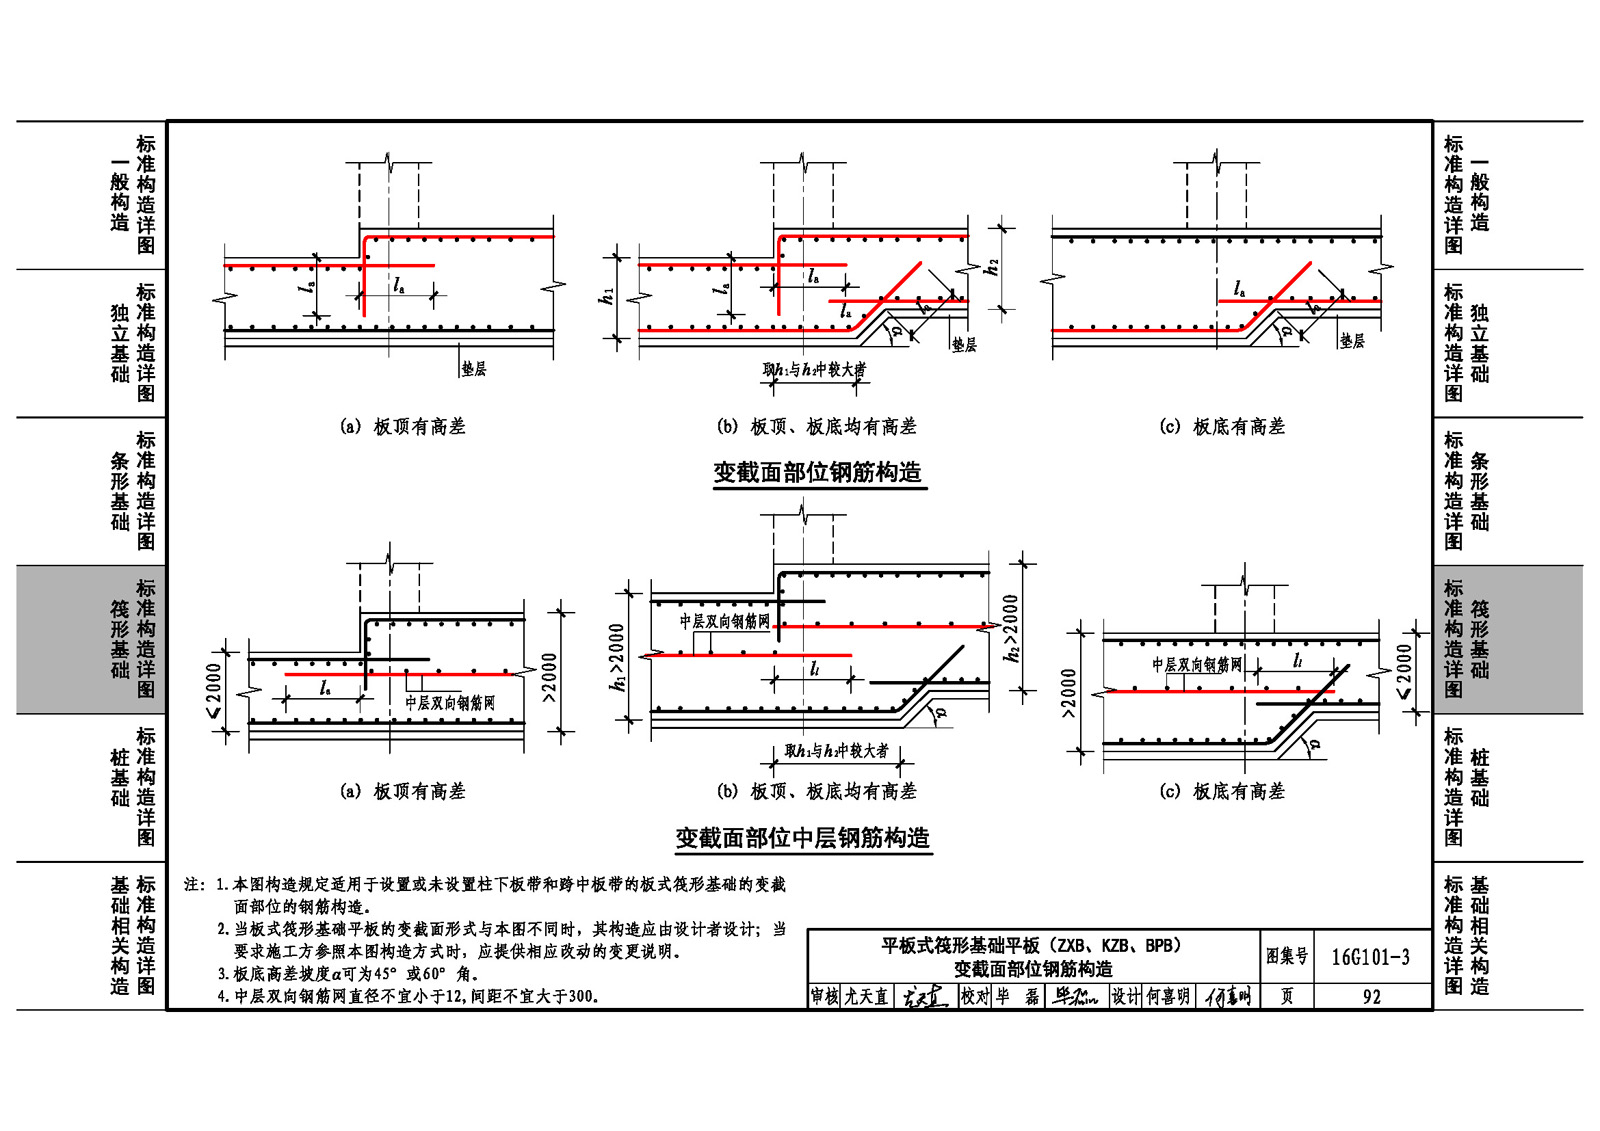 16g101-3:混凝土施工图平面整体表示方法制图规则